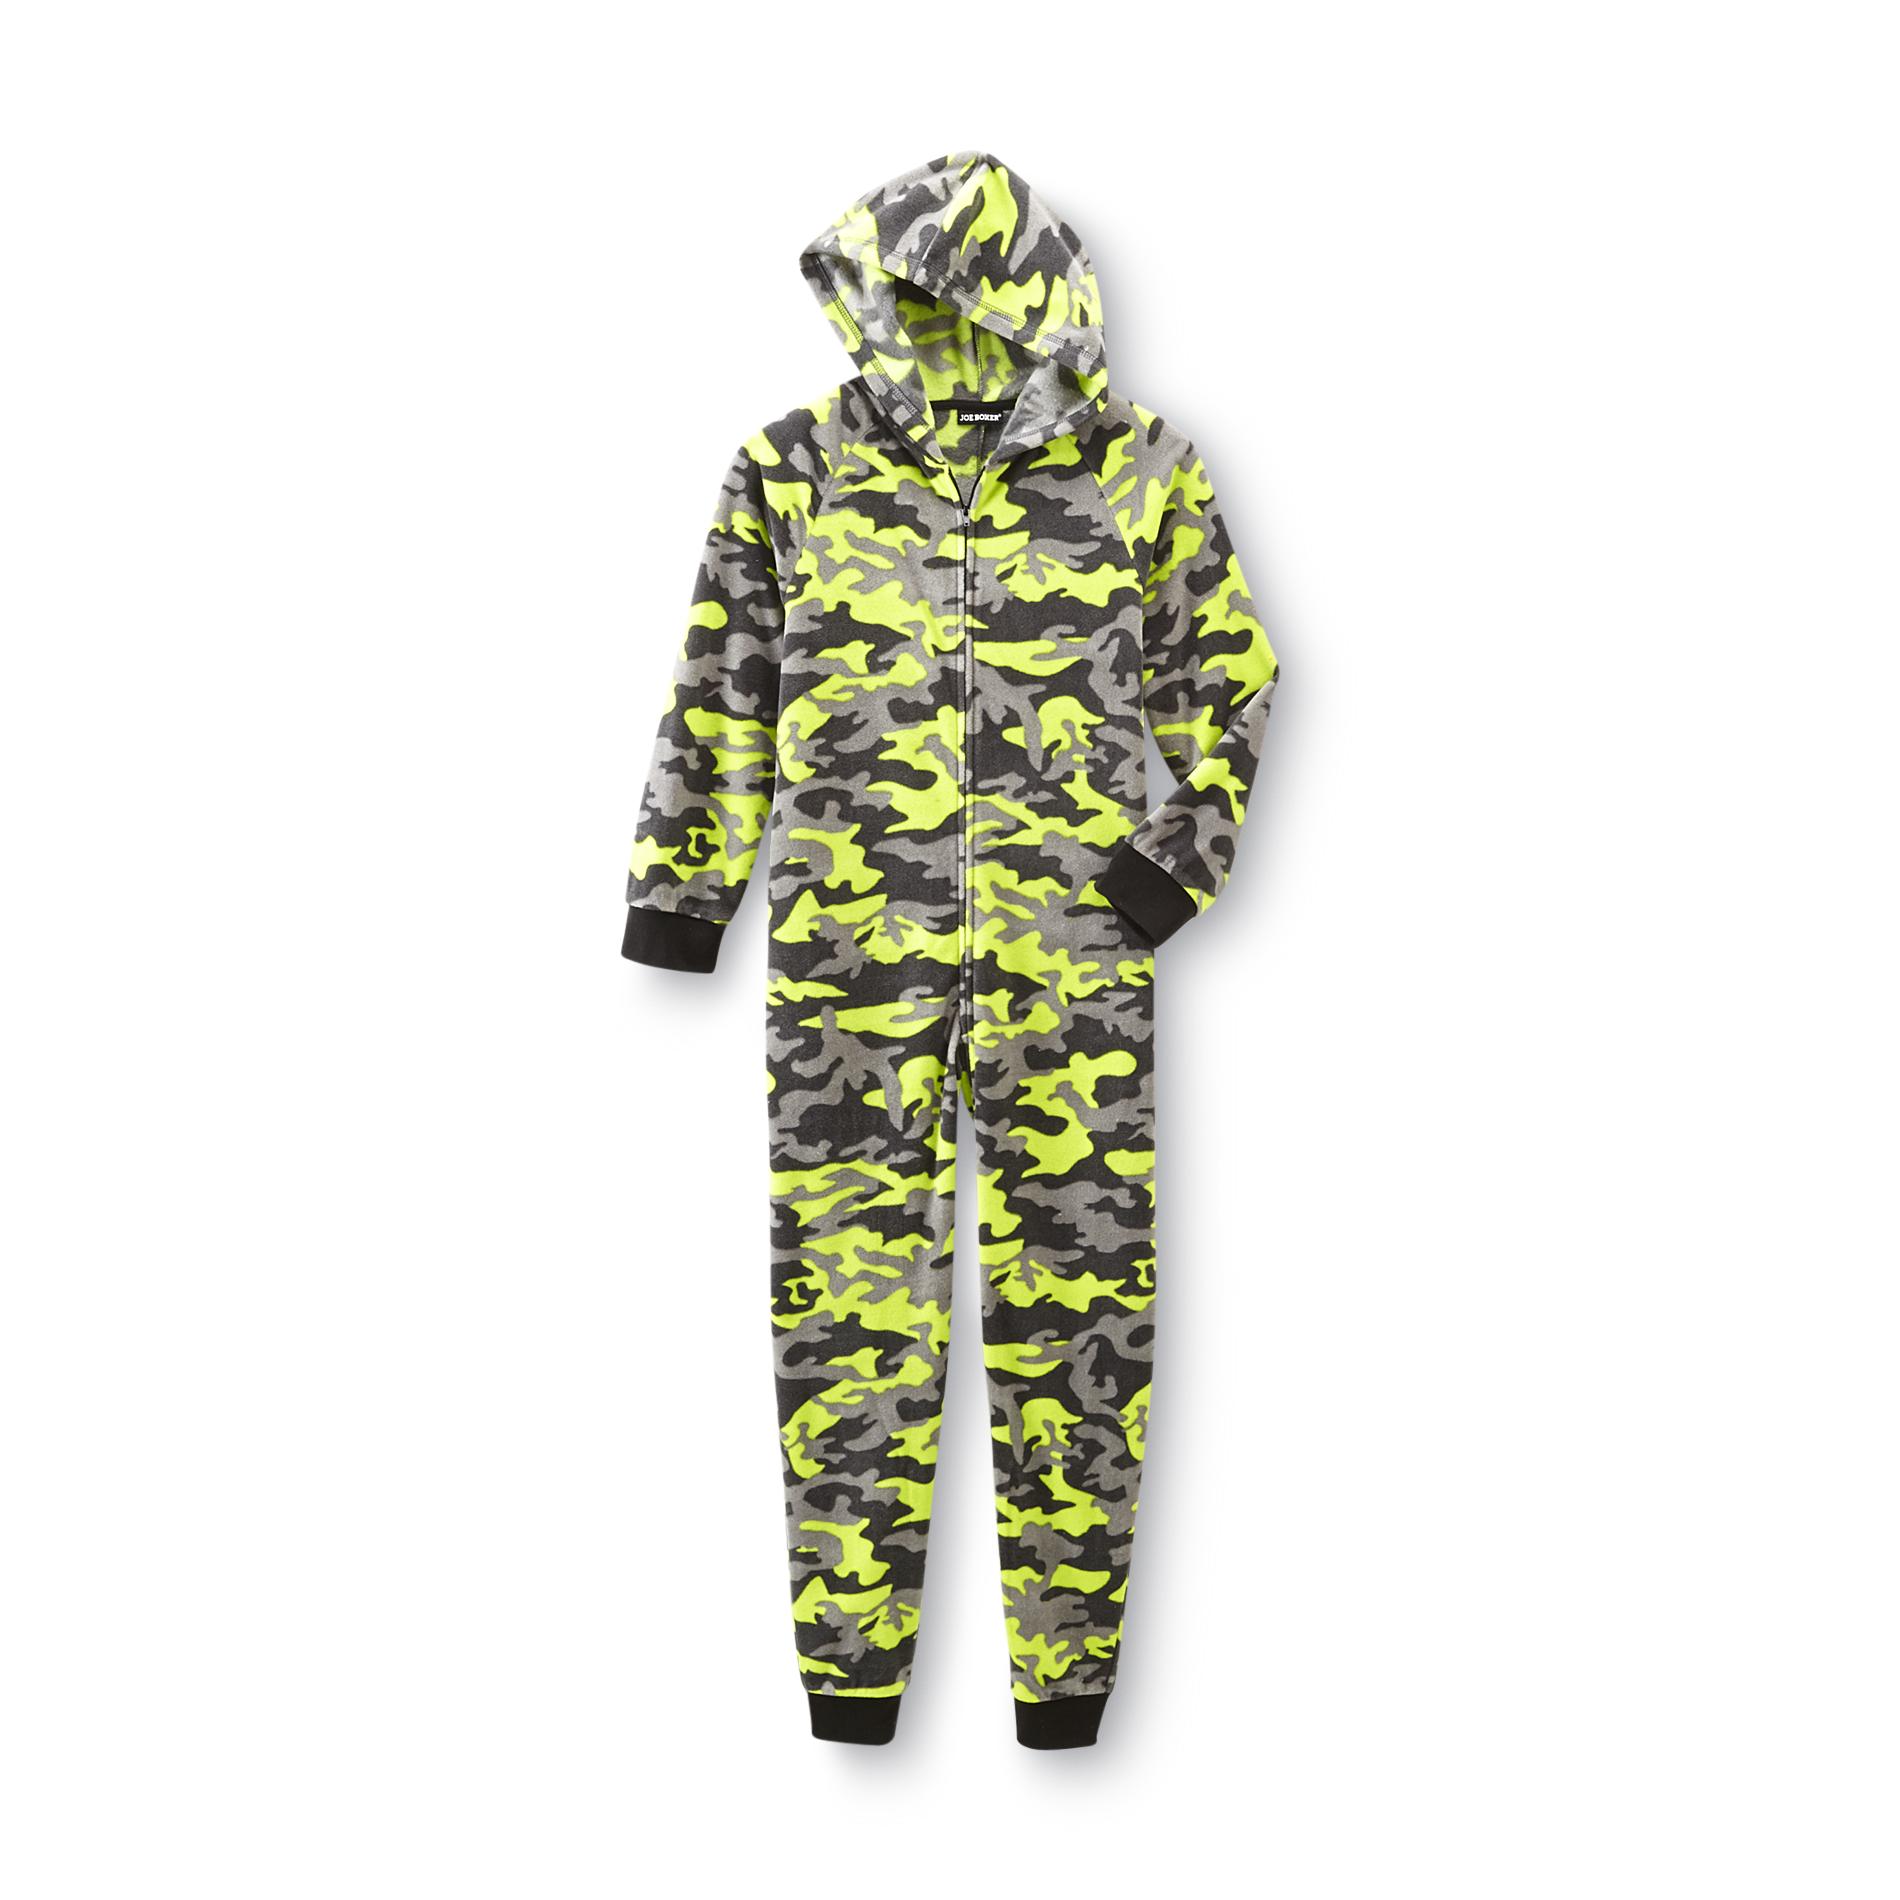 Joe Boxer Boy's Hooded Fleece Pajamas - Neon Camouflage